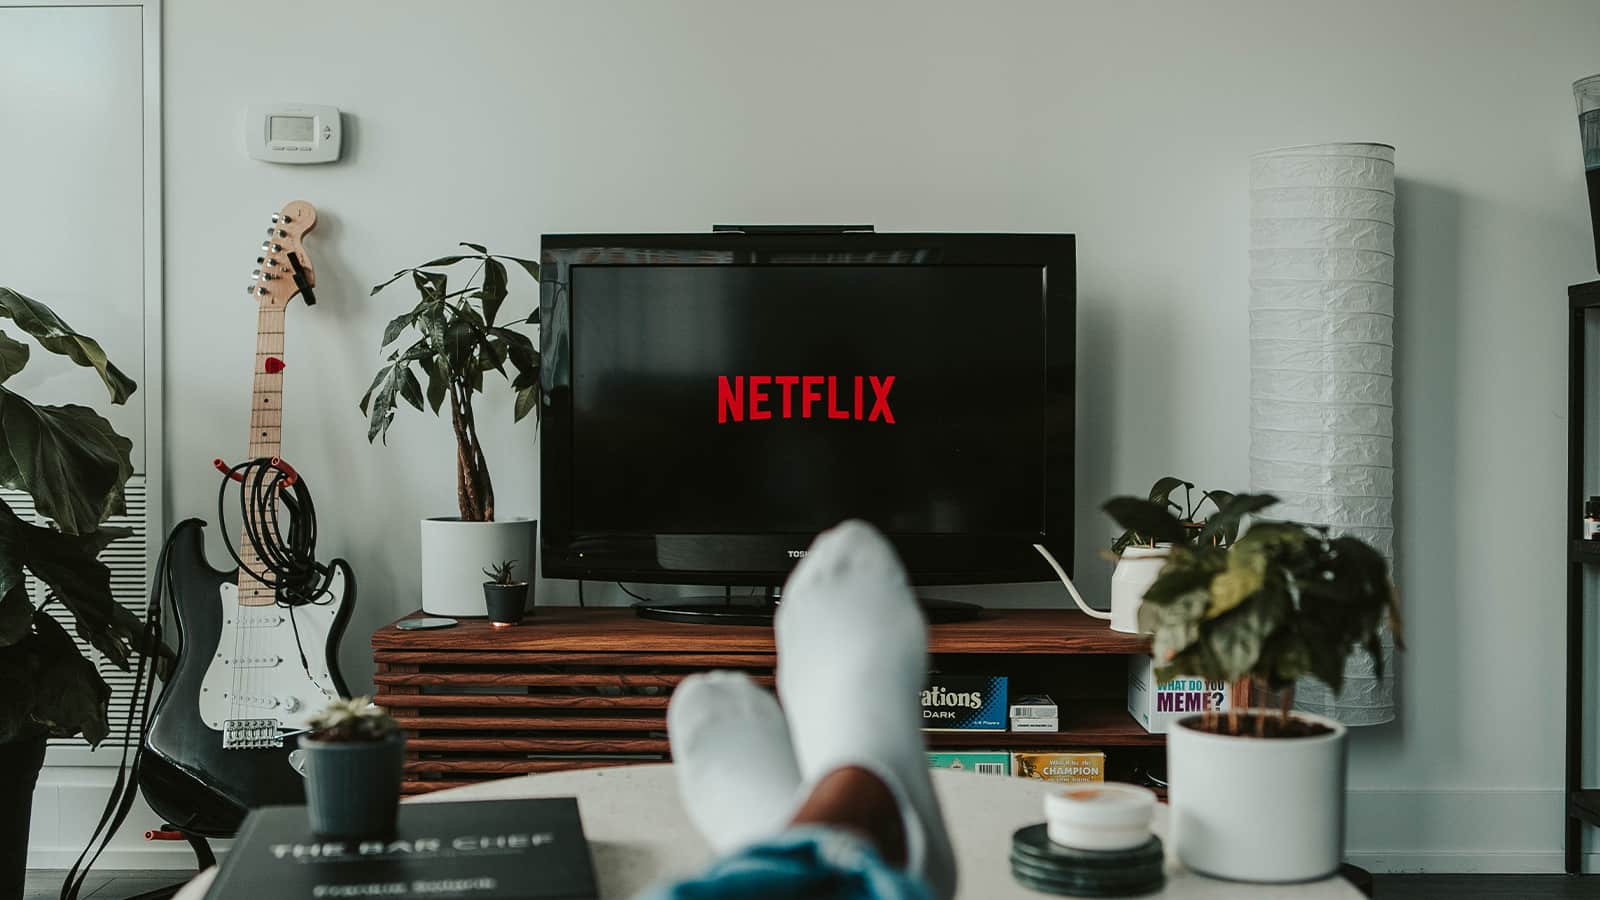 Expressvpn Slow On Netflix 5 Fixes To Try Technadu